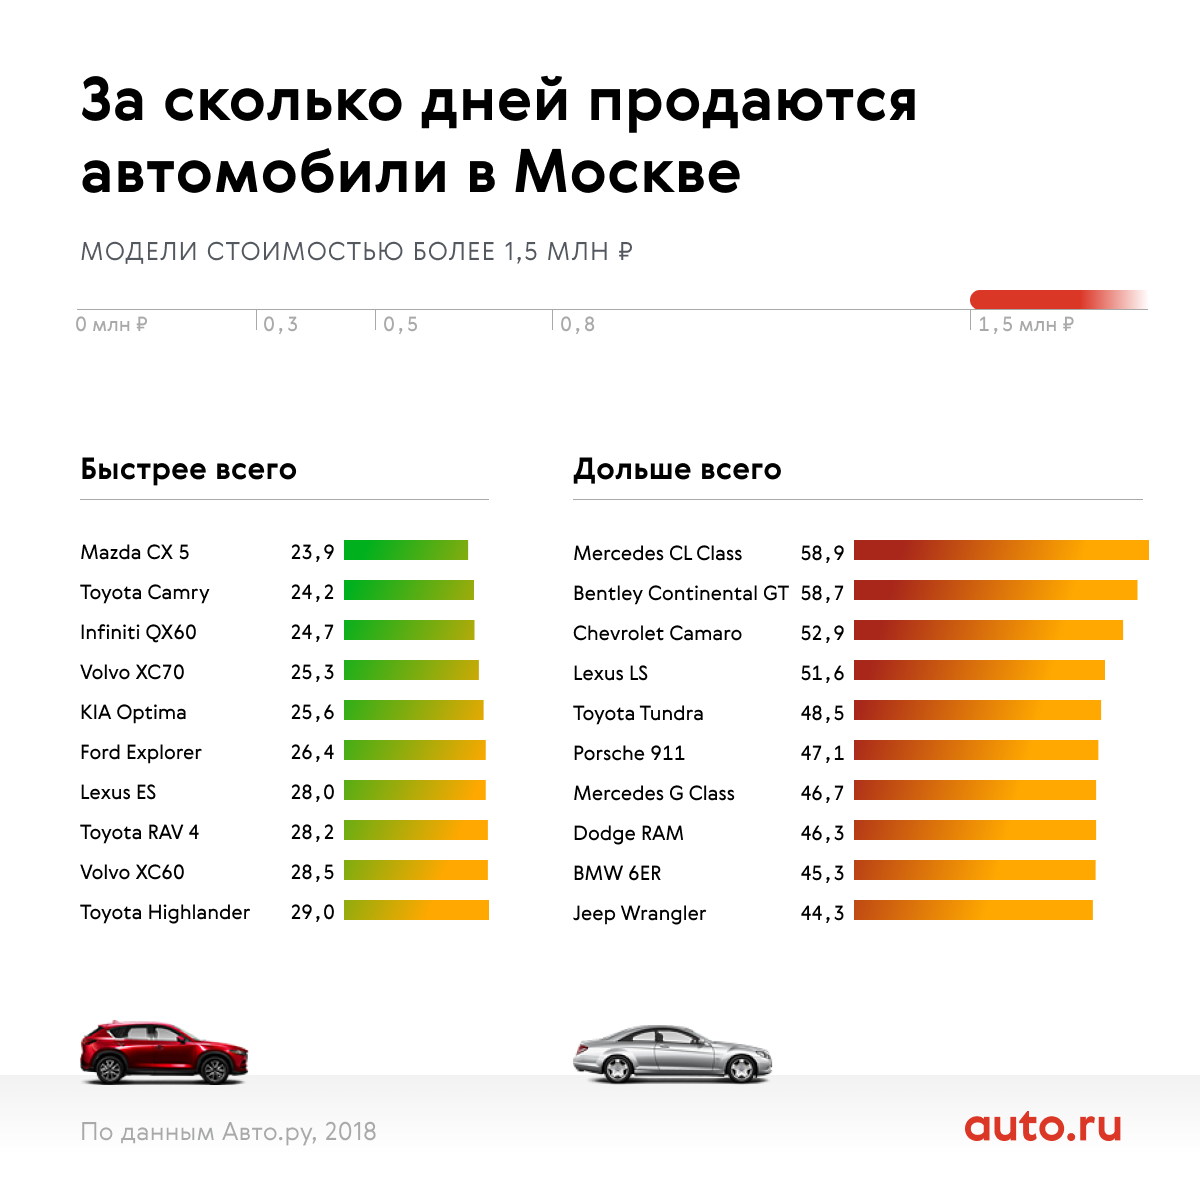 Рейтинг скорости продаж автомобилей разных марок